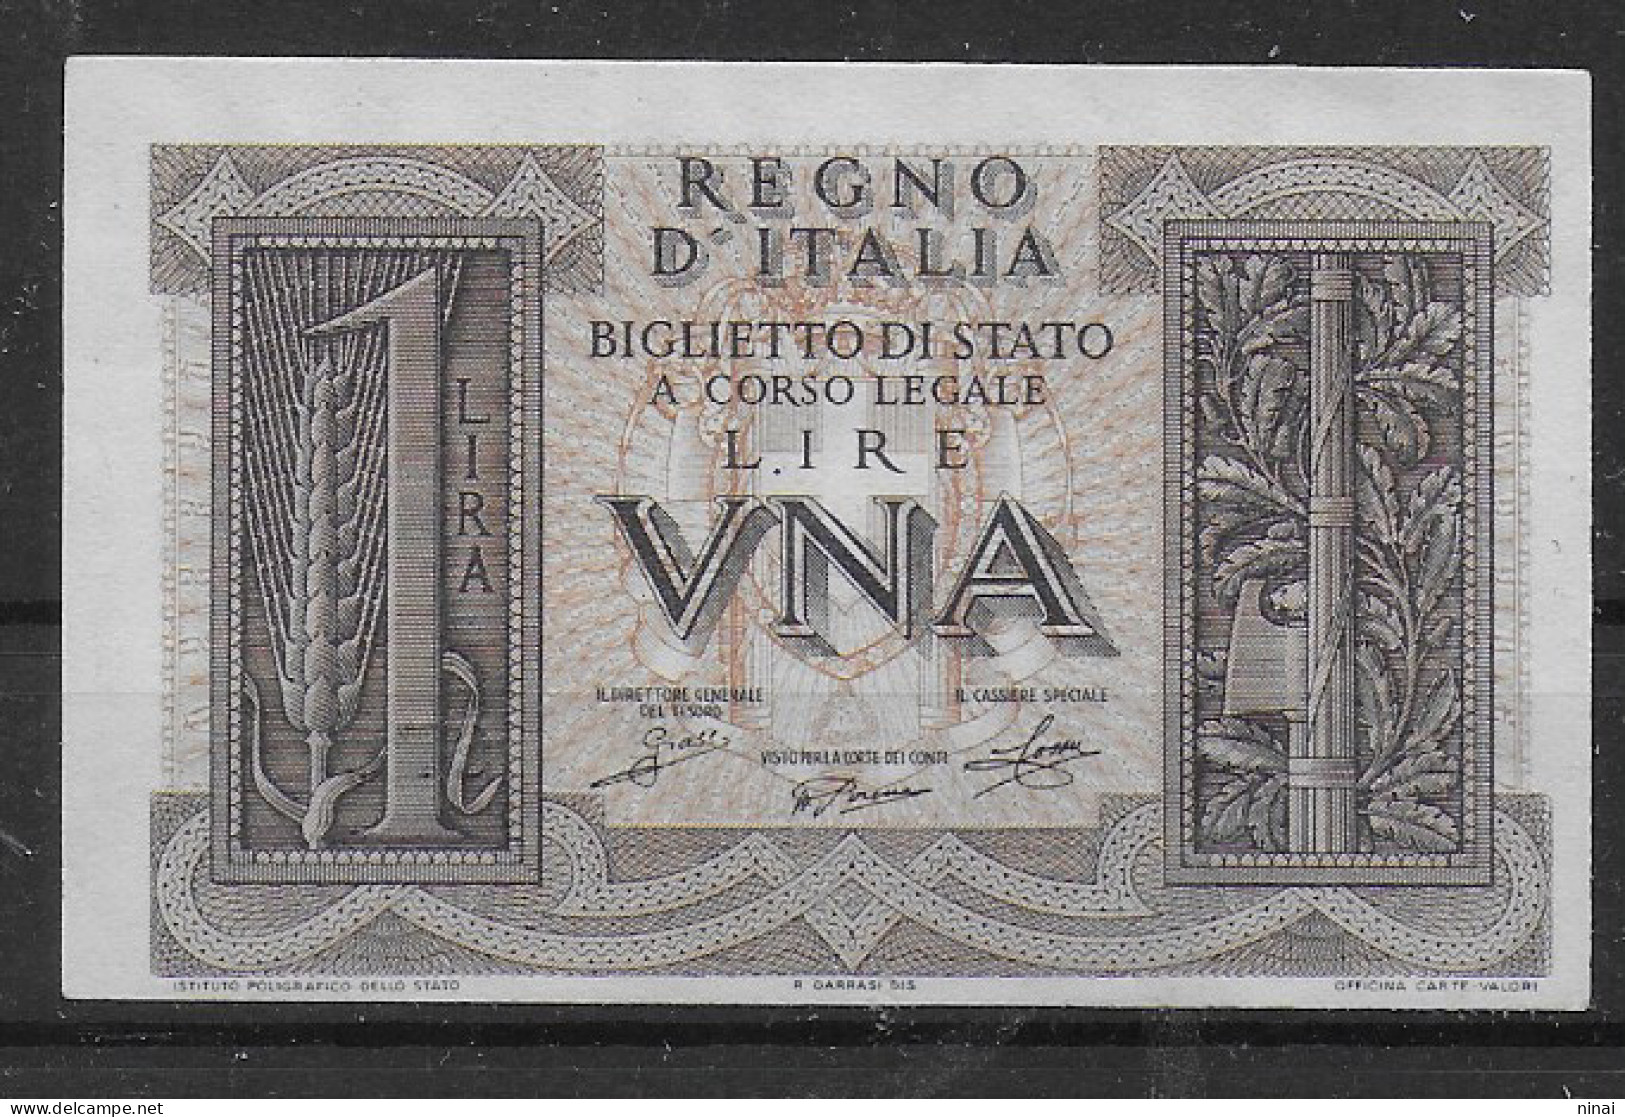 BANCONOTA 1939 UNA LIRA GRASSI/PORENA/COSSU FIOR DI STAMPA C1496A - Italia – 1 Lira